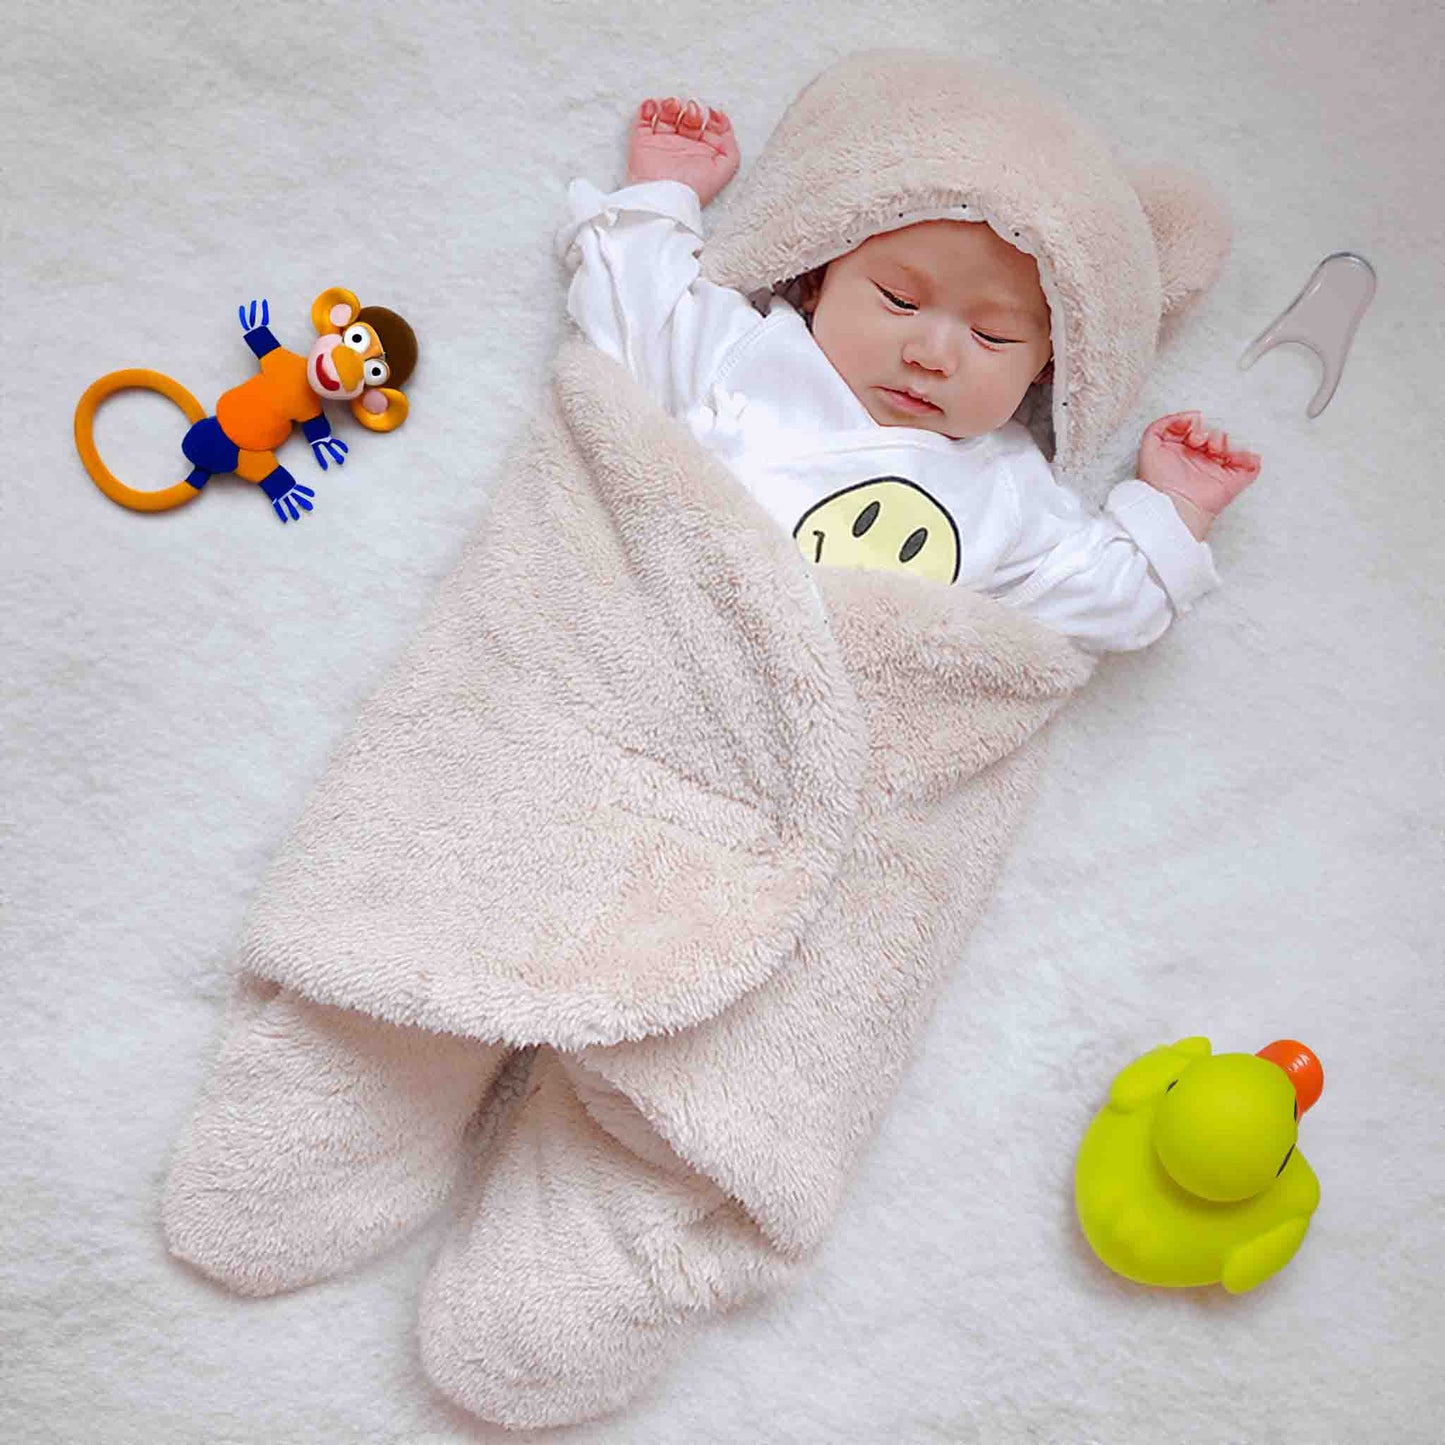 BleuRibbon Baby Soft Wrap Blankets Baby Sleeping Bag Envelope